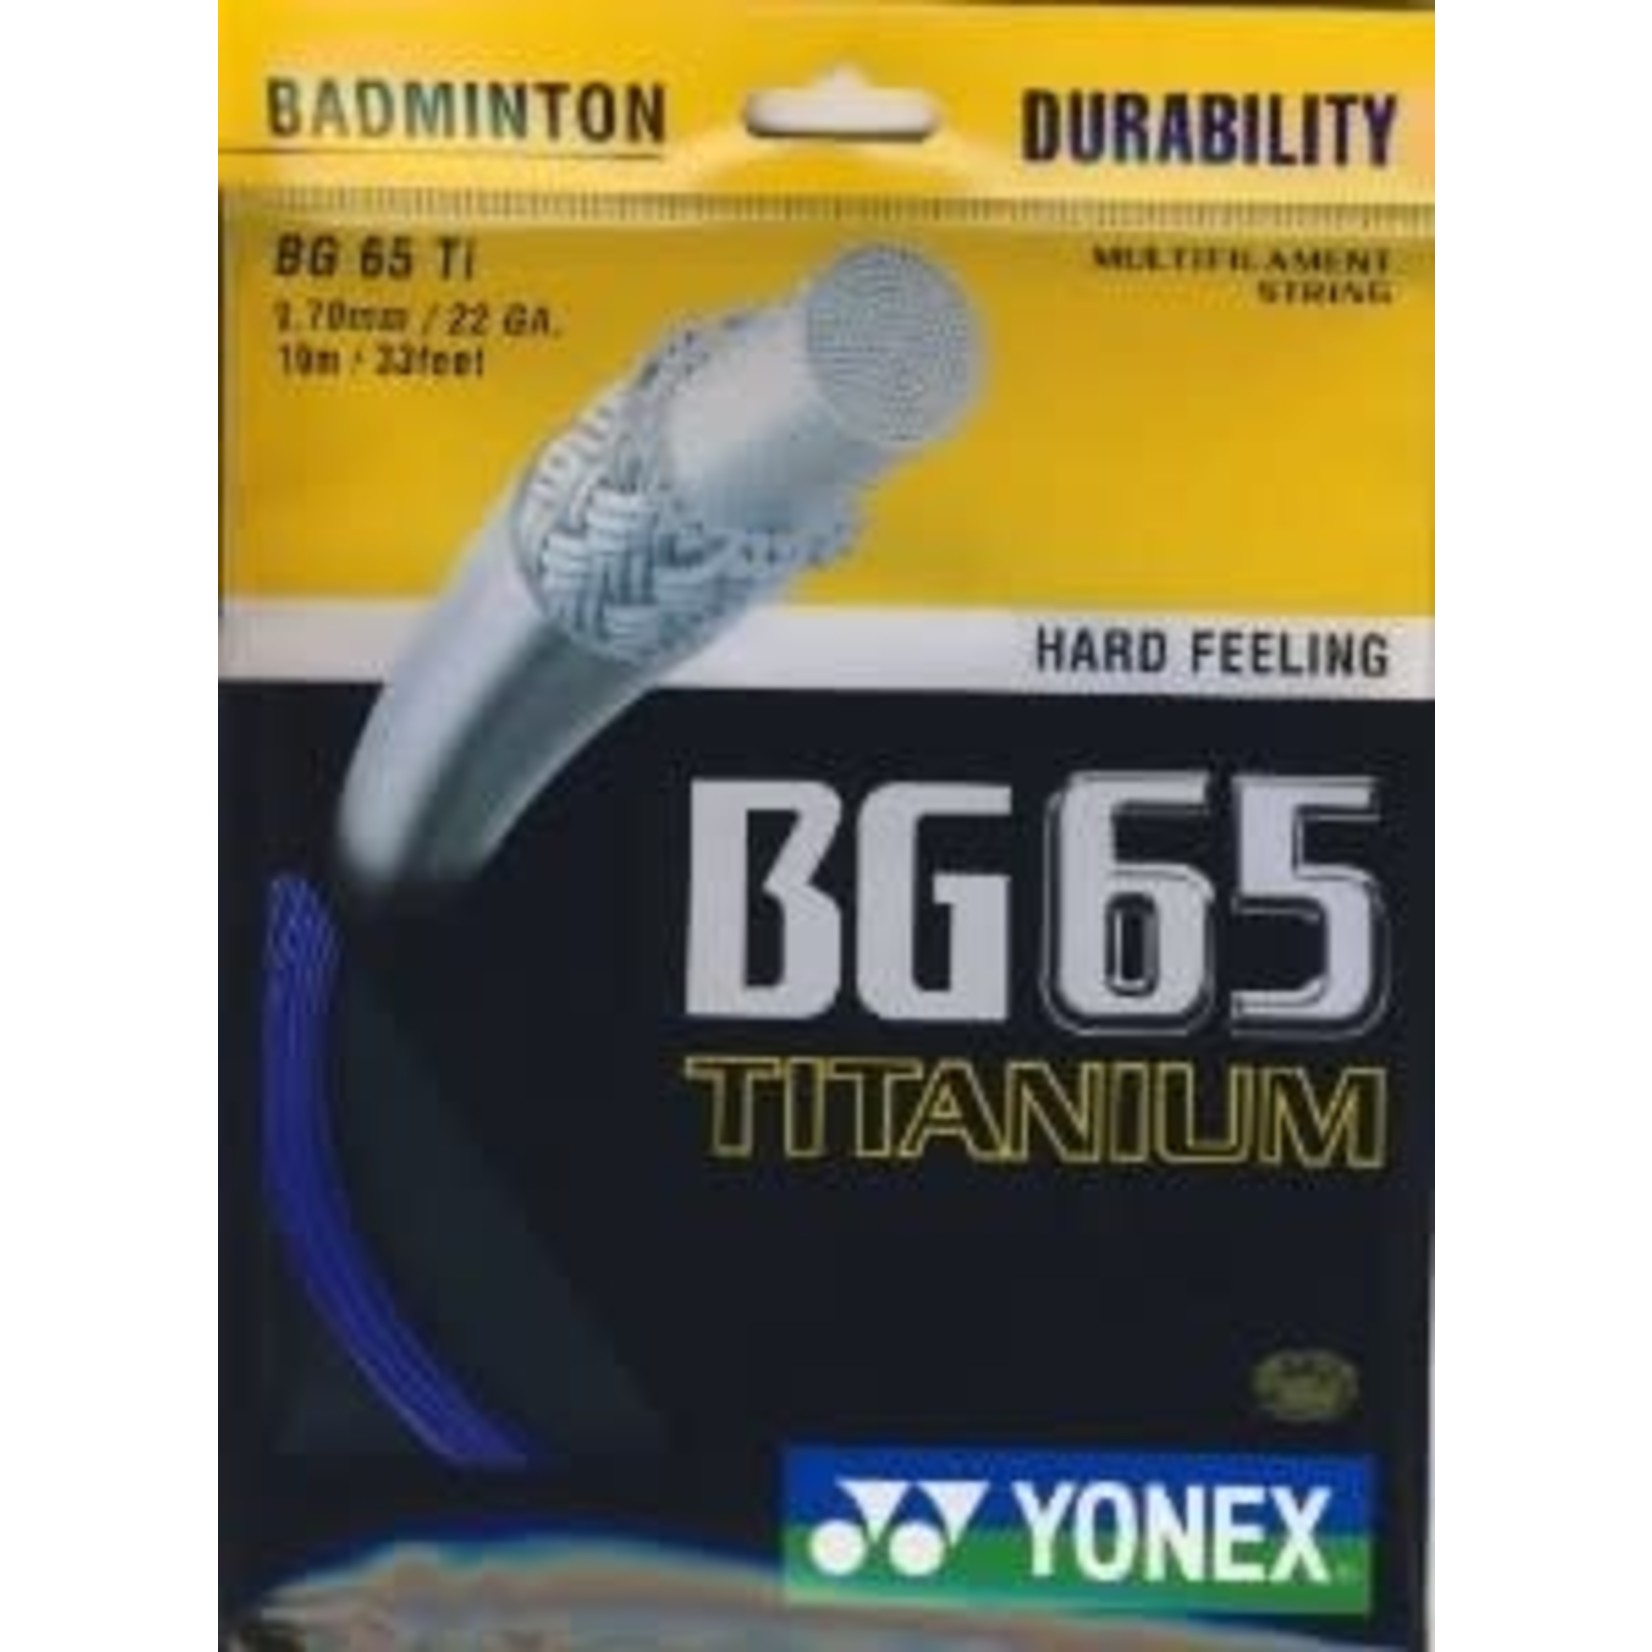 Yonex Yonex BG 65 Ti Badminton Strings